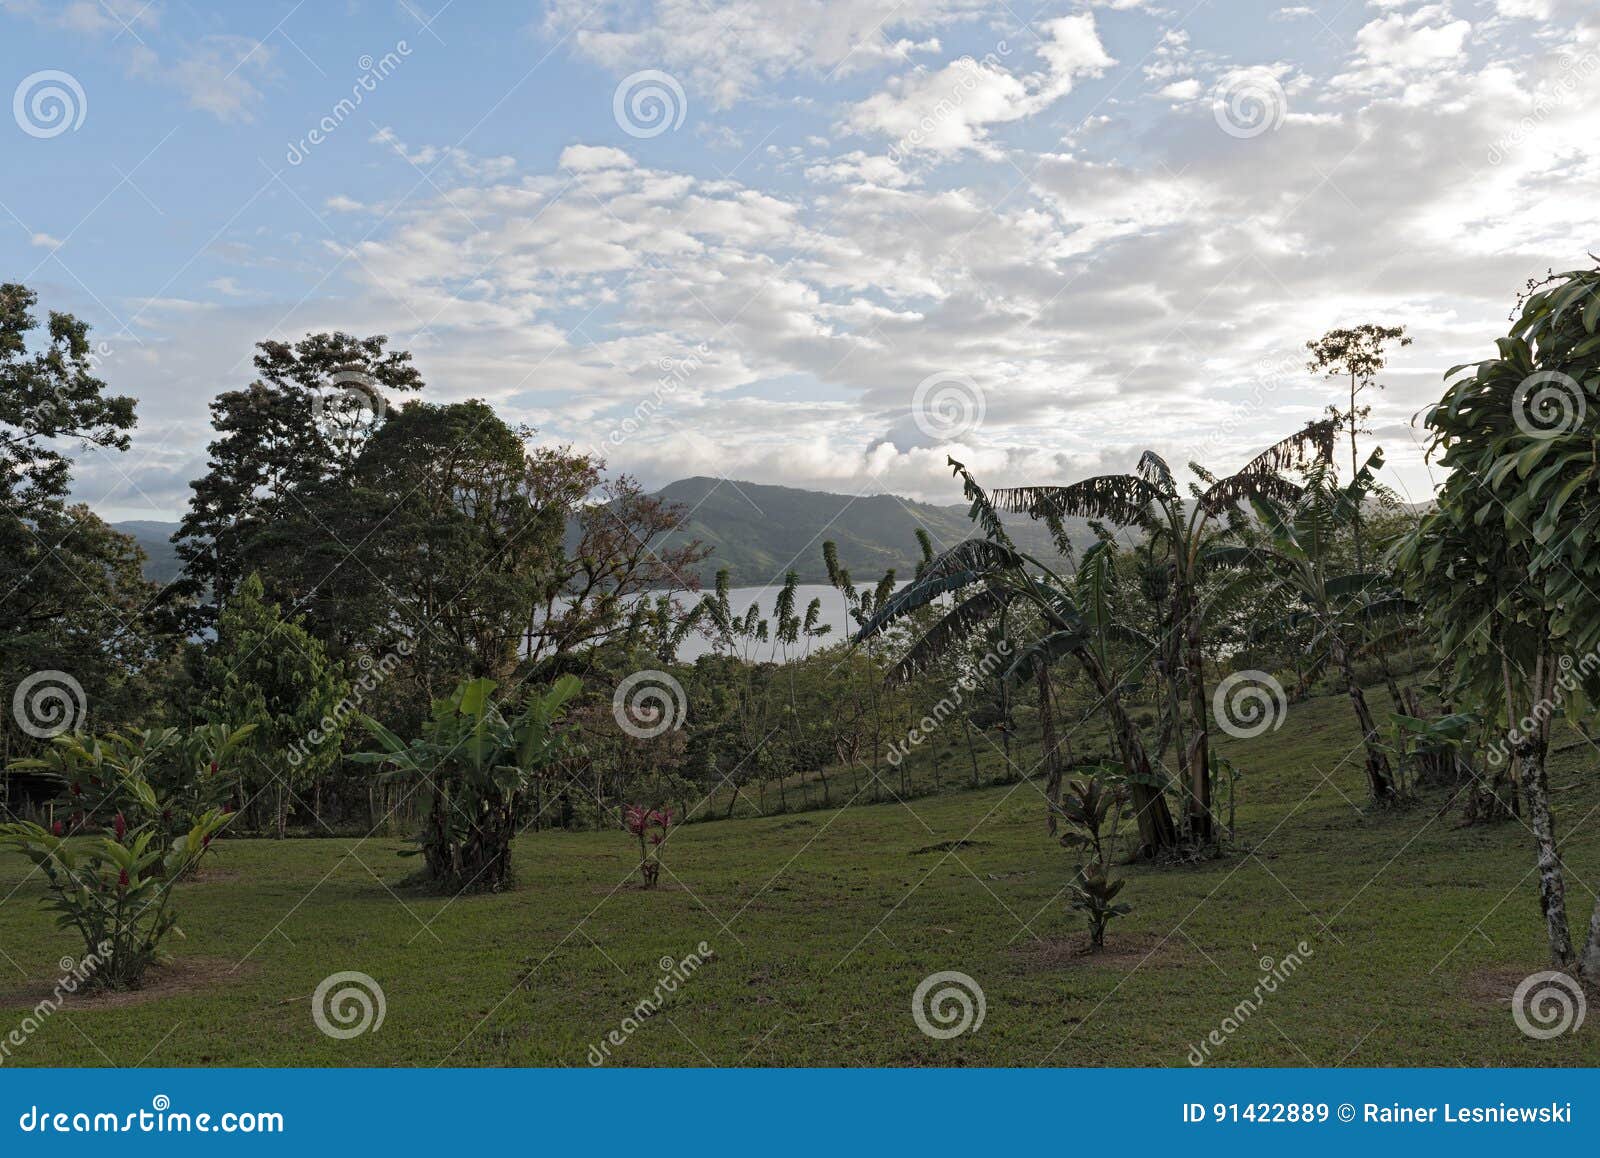 landscape above the lake arenal at la fortuna, costa rica